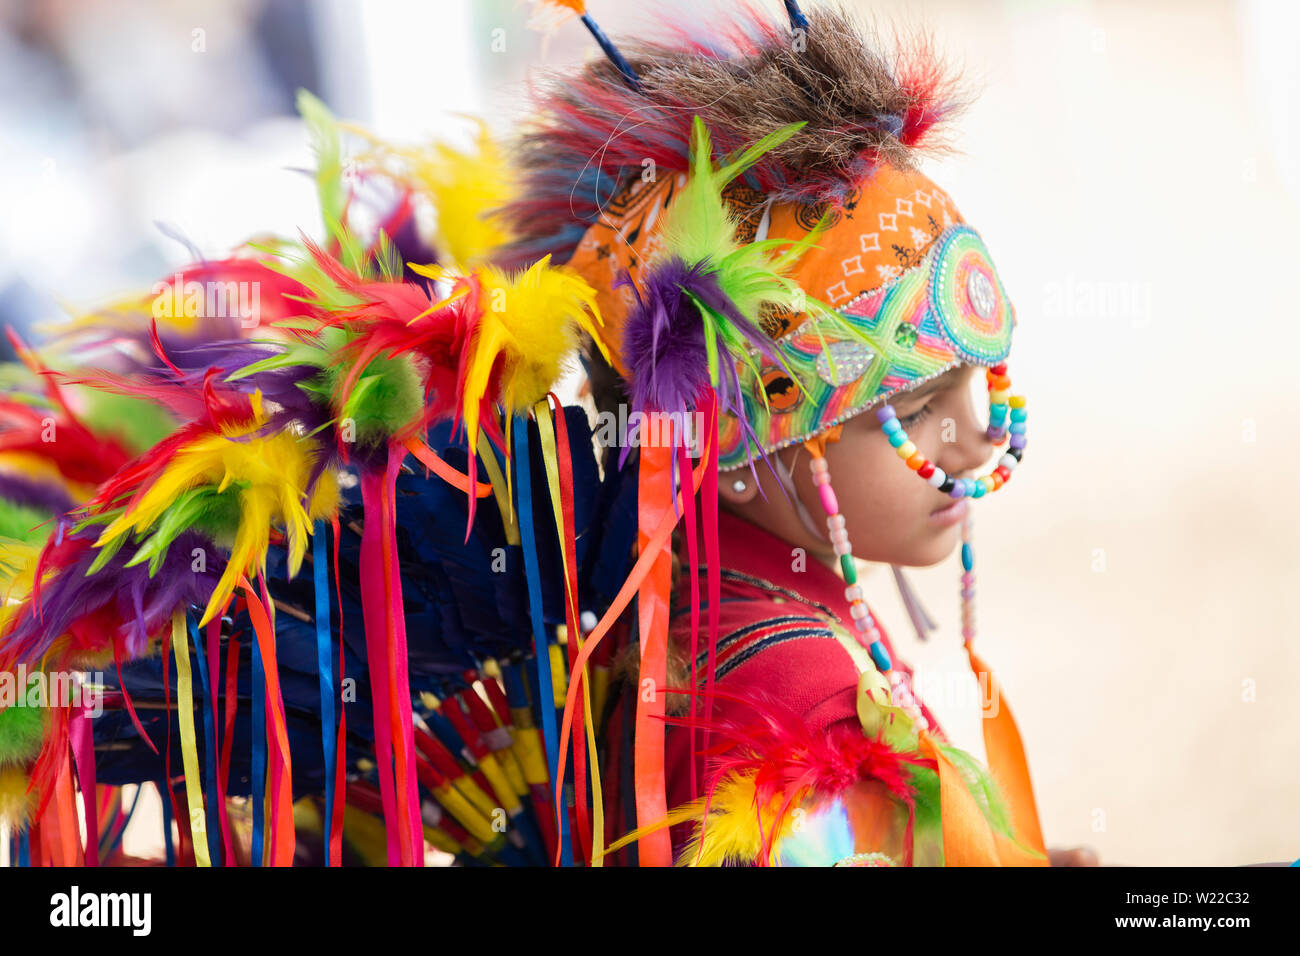 Le Canada, l'Ontario, Saint Catharines, les jeunes Autochtones de sexe masculin habillé en costume traditionnel indien de l'Amérique du Nord à un Pow-wow danse Banque D'Images